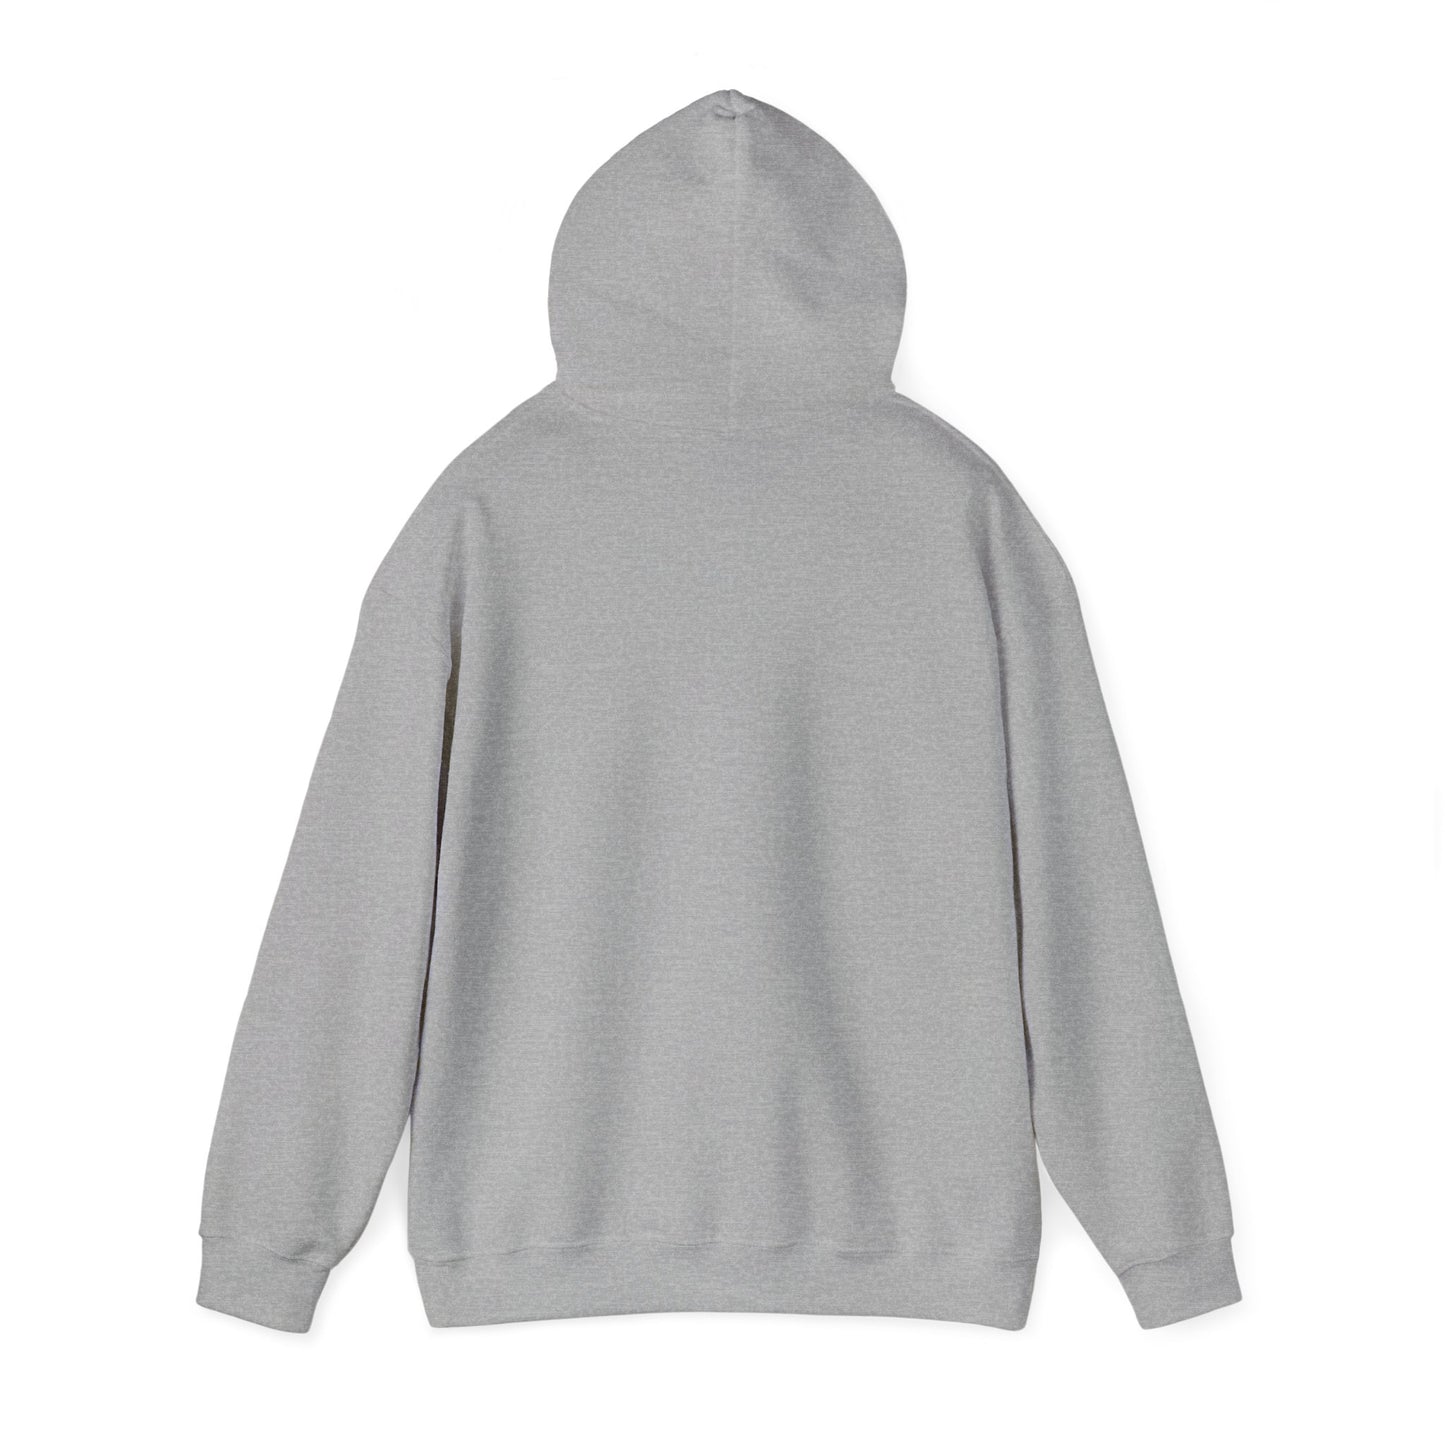 "It is what it is male" Single Print Unisex Heavy Blend™ Hooded Sweatshirt